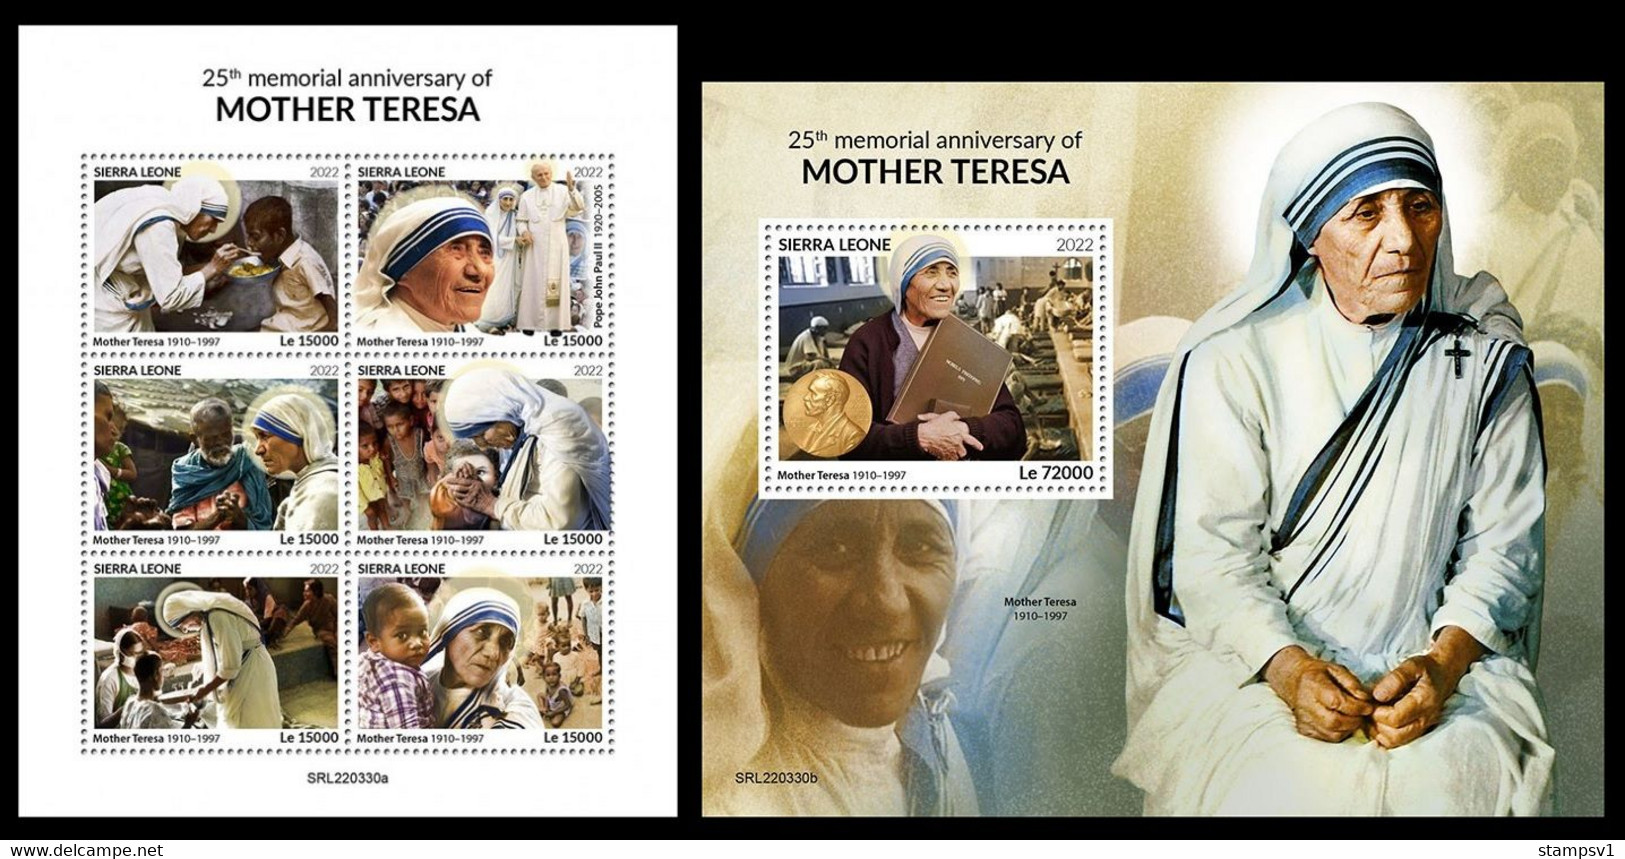 Sierra Leone 2022 Mother Teresa. (330) OFFICIAL ISSUE - Mother Teresa